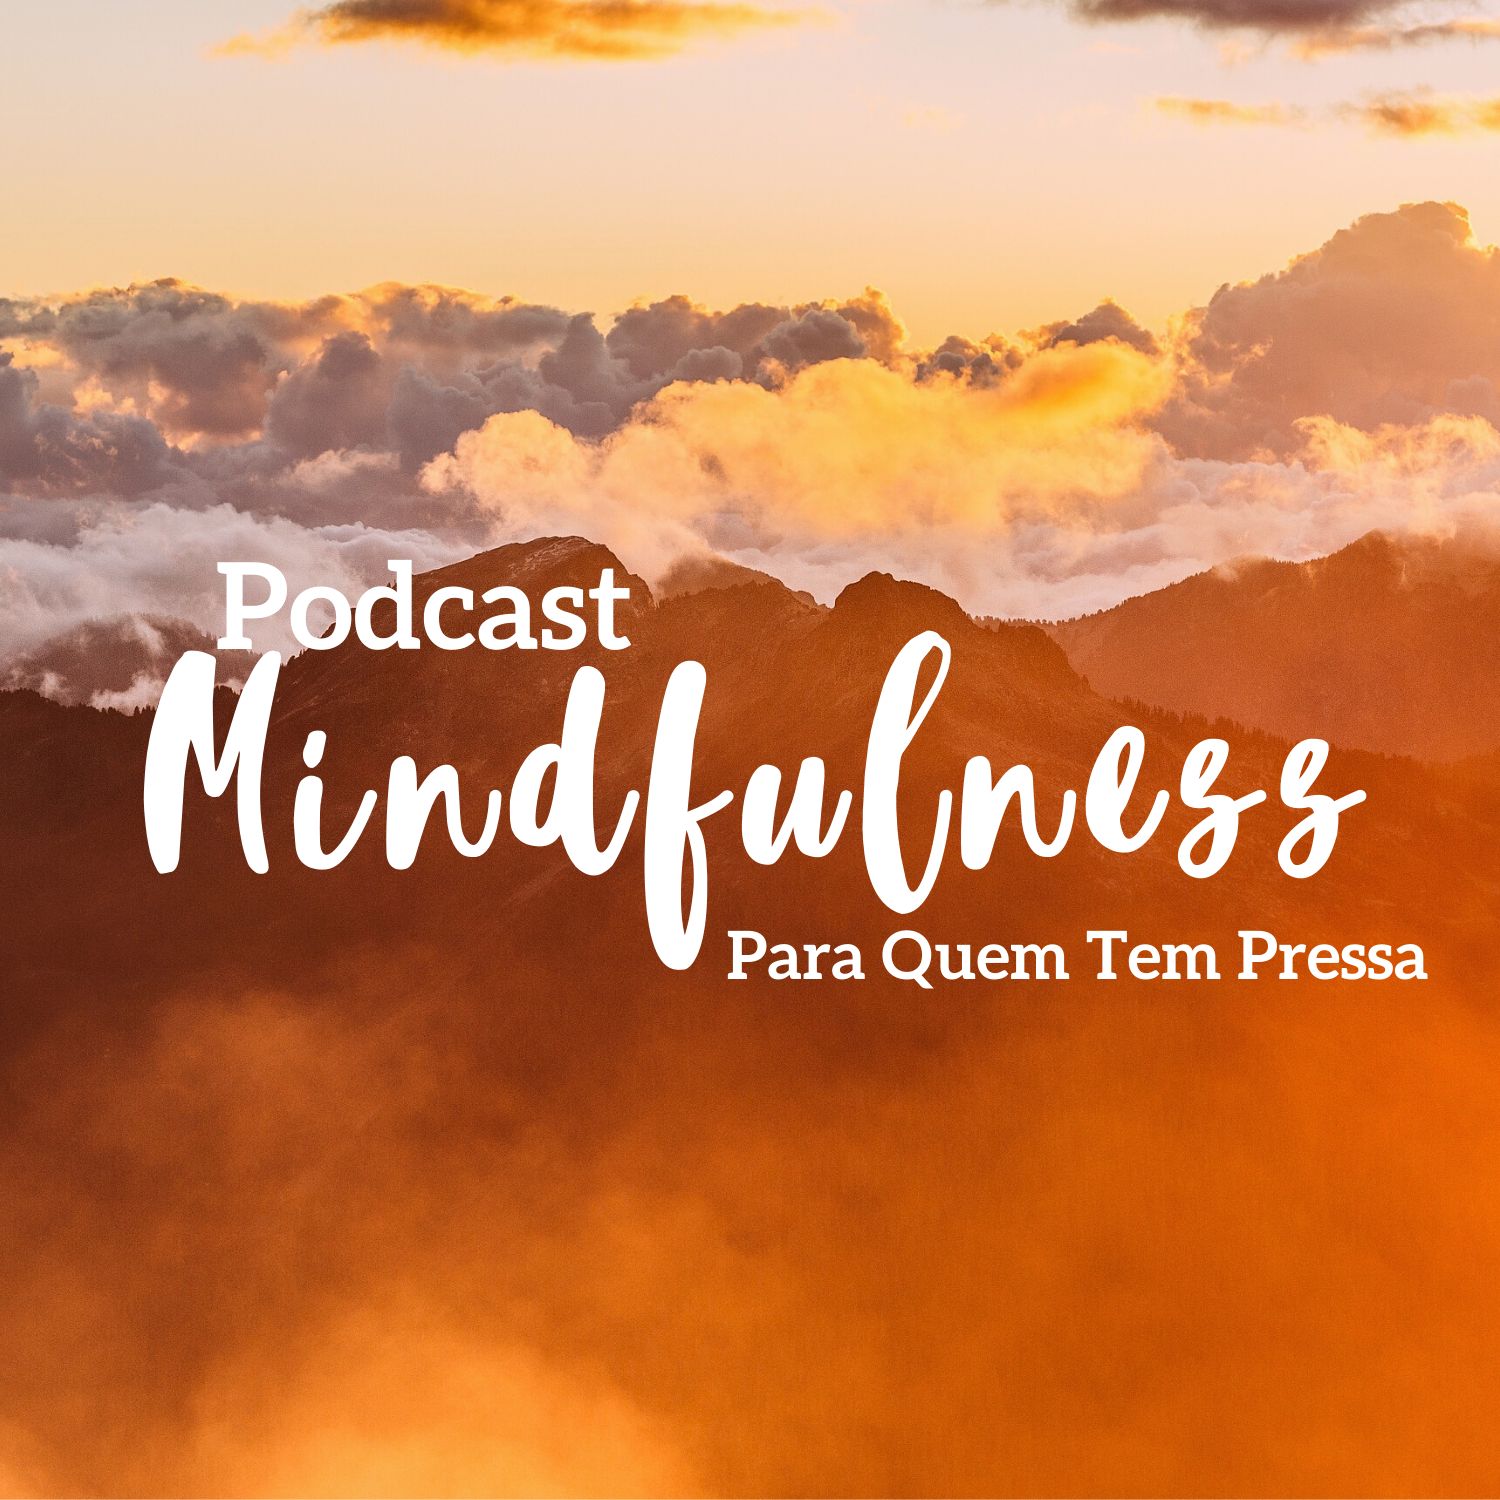 Mindfulness Para Quem Tem Pressa